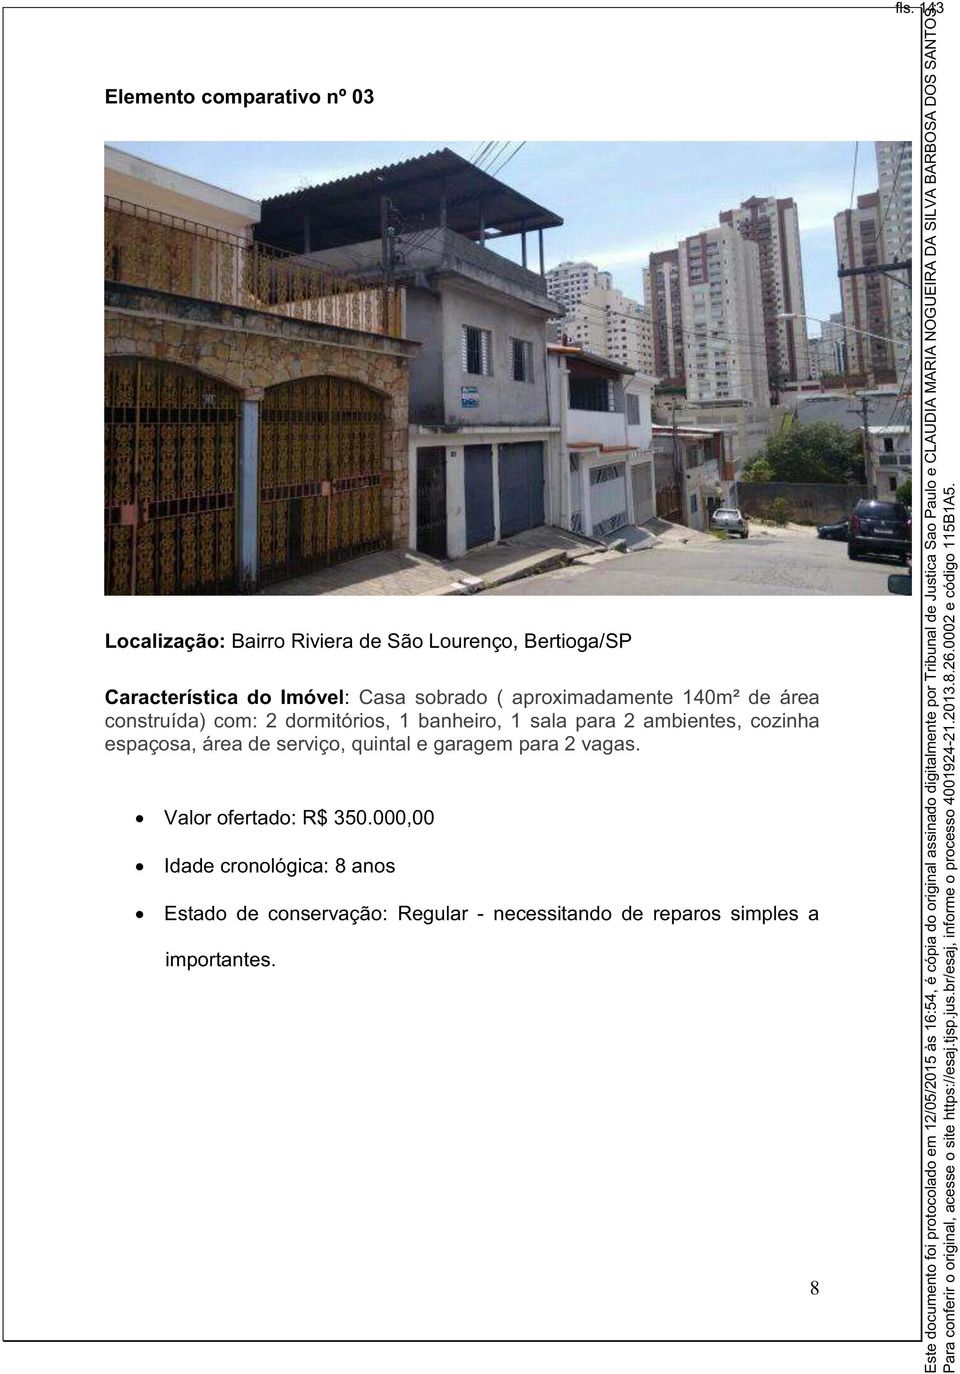 ambientes, cozinha espaçosa, área de serviço, quintal e garagem para 2 vagas. Valor ofertado: R$ 350.